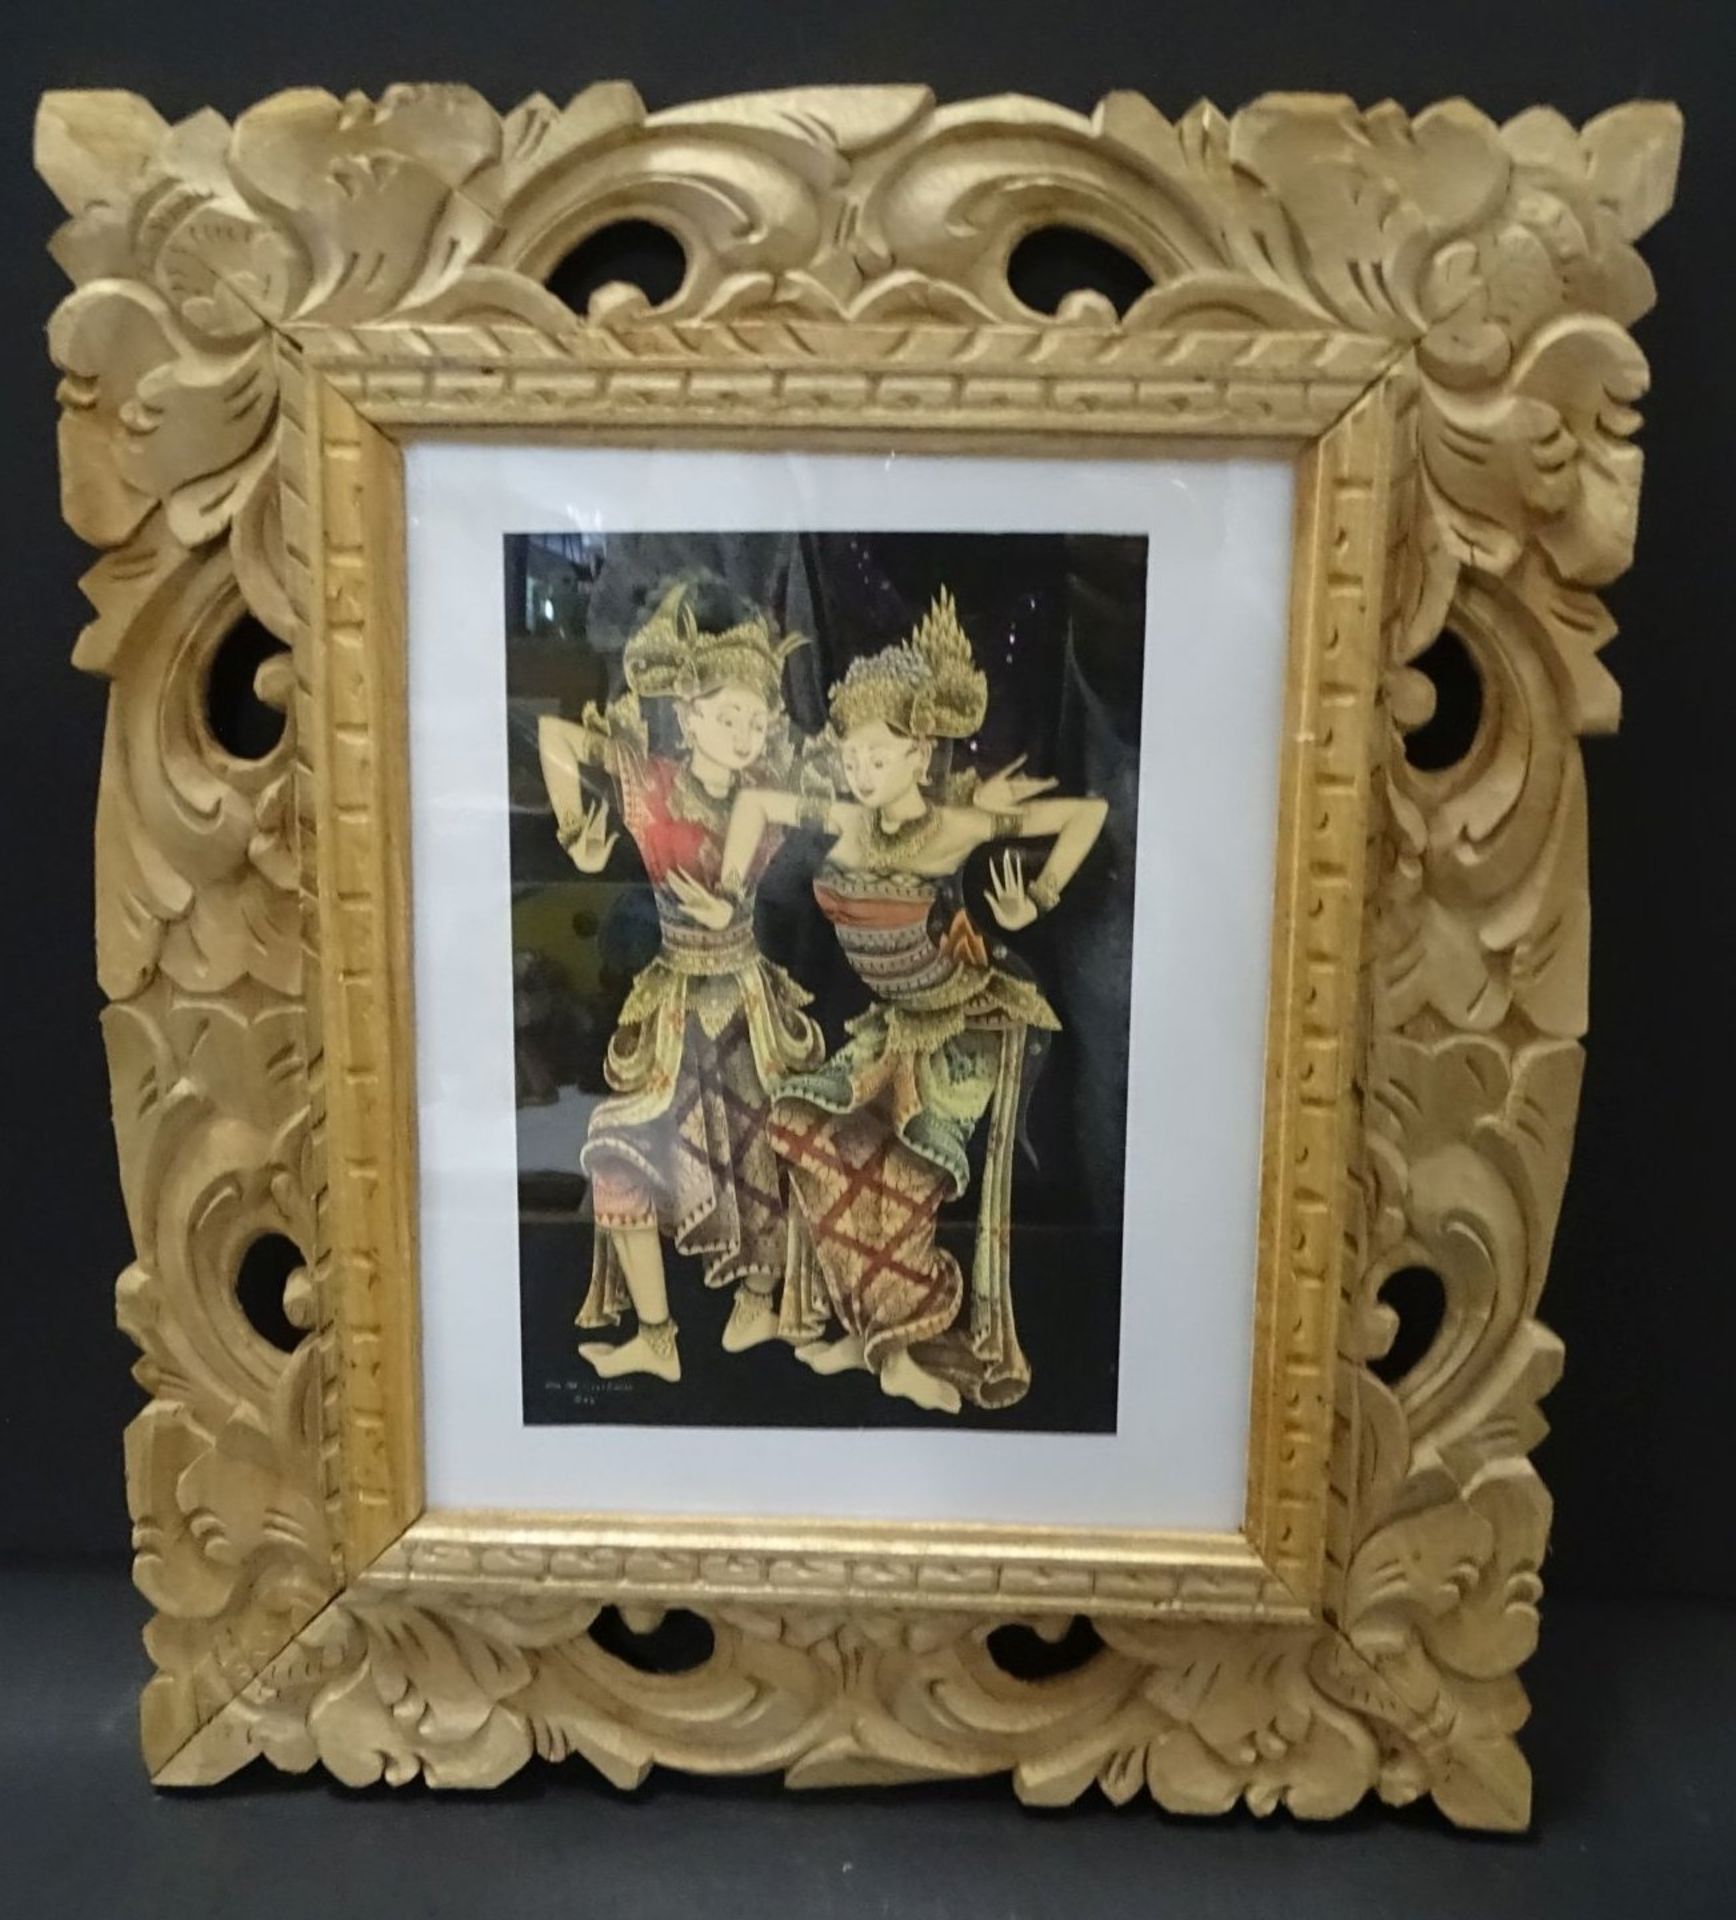 unleserl. sign kl. Aquarell, "Tempeltänzerinnen" 20x14 cmwohl Bali, geschnitzter Rahmen, 38x33 c